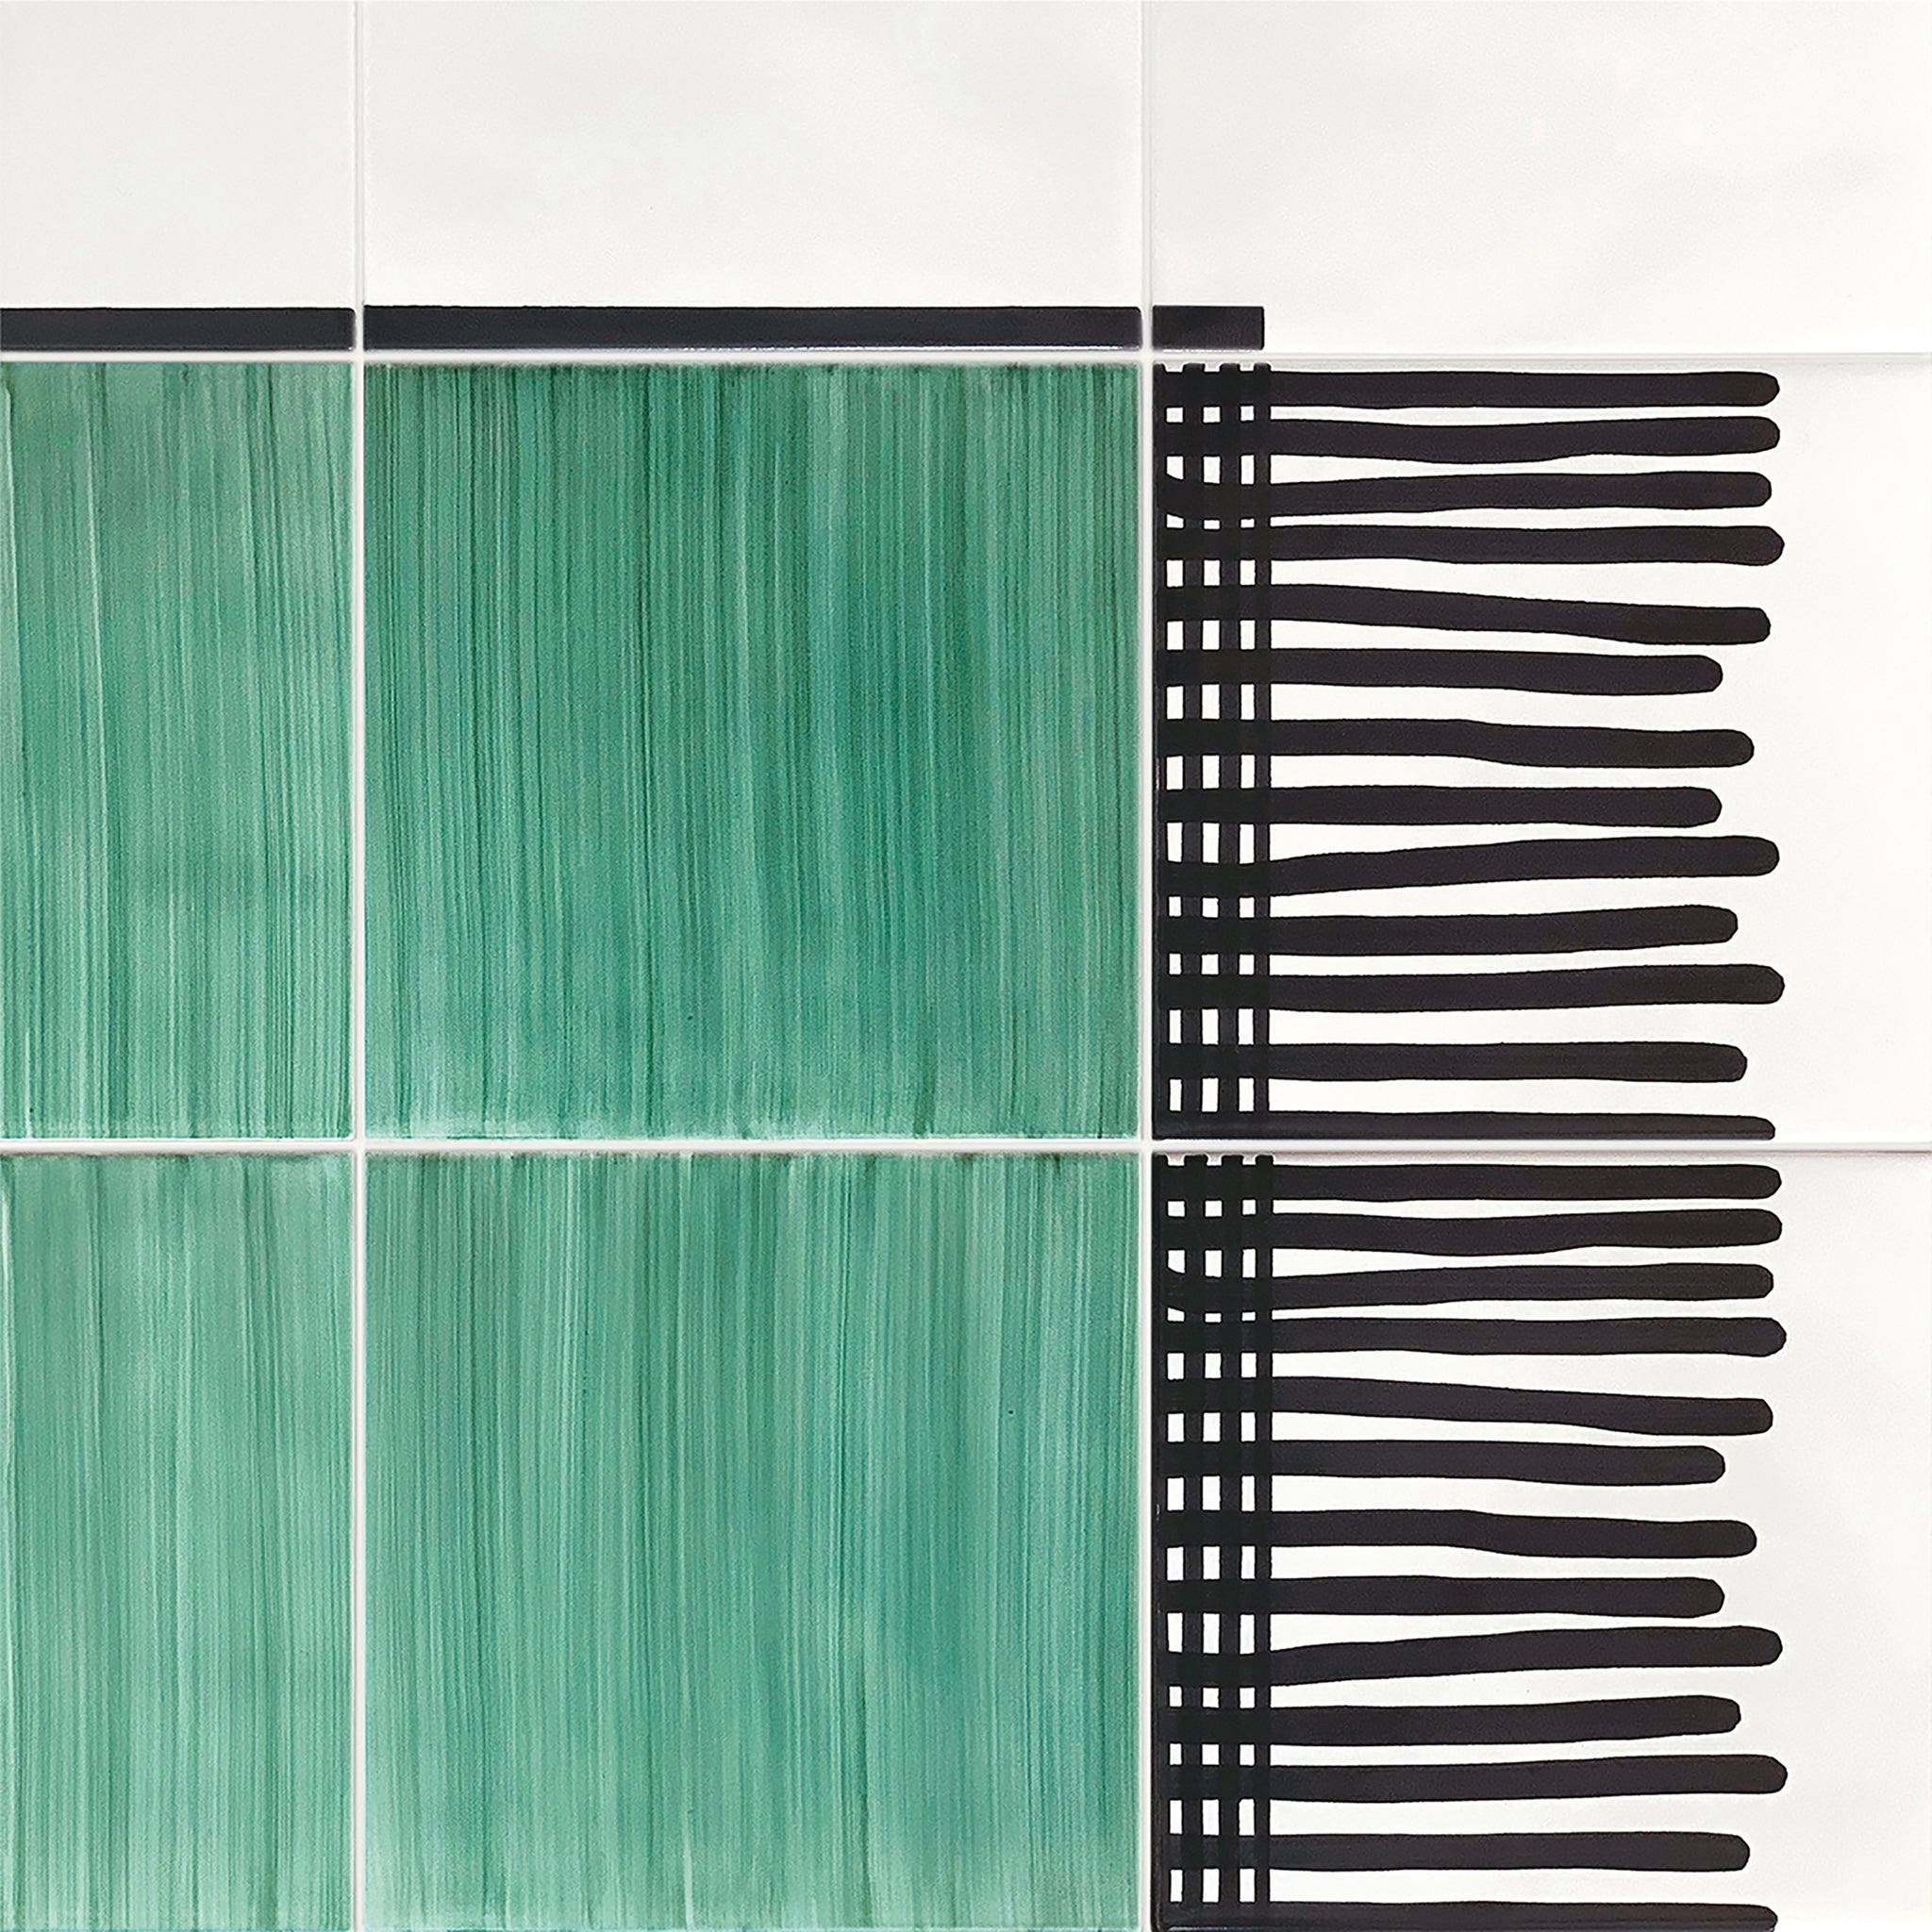 Teppich Total Grün Keramische Komposition von Giuliano Andrea dell'Uva 120 X 80 - Alternative Ansicht 2